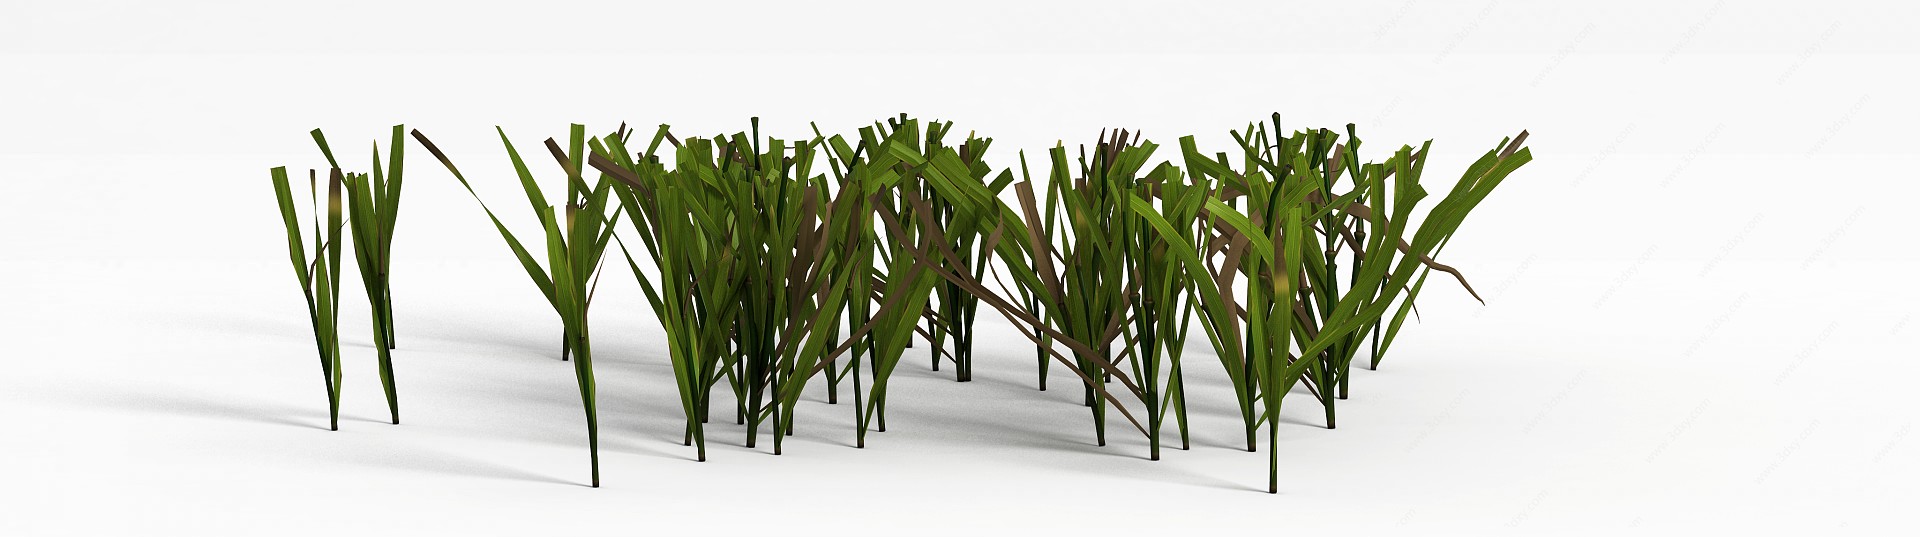 草坪绿草3D模型